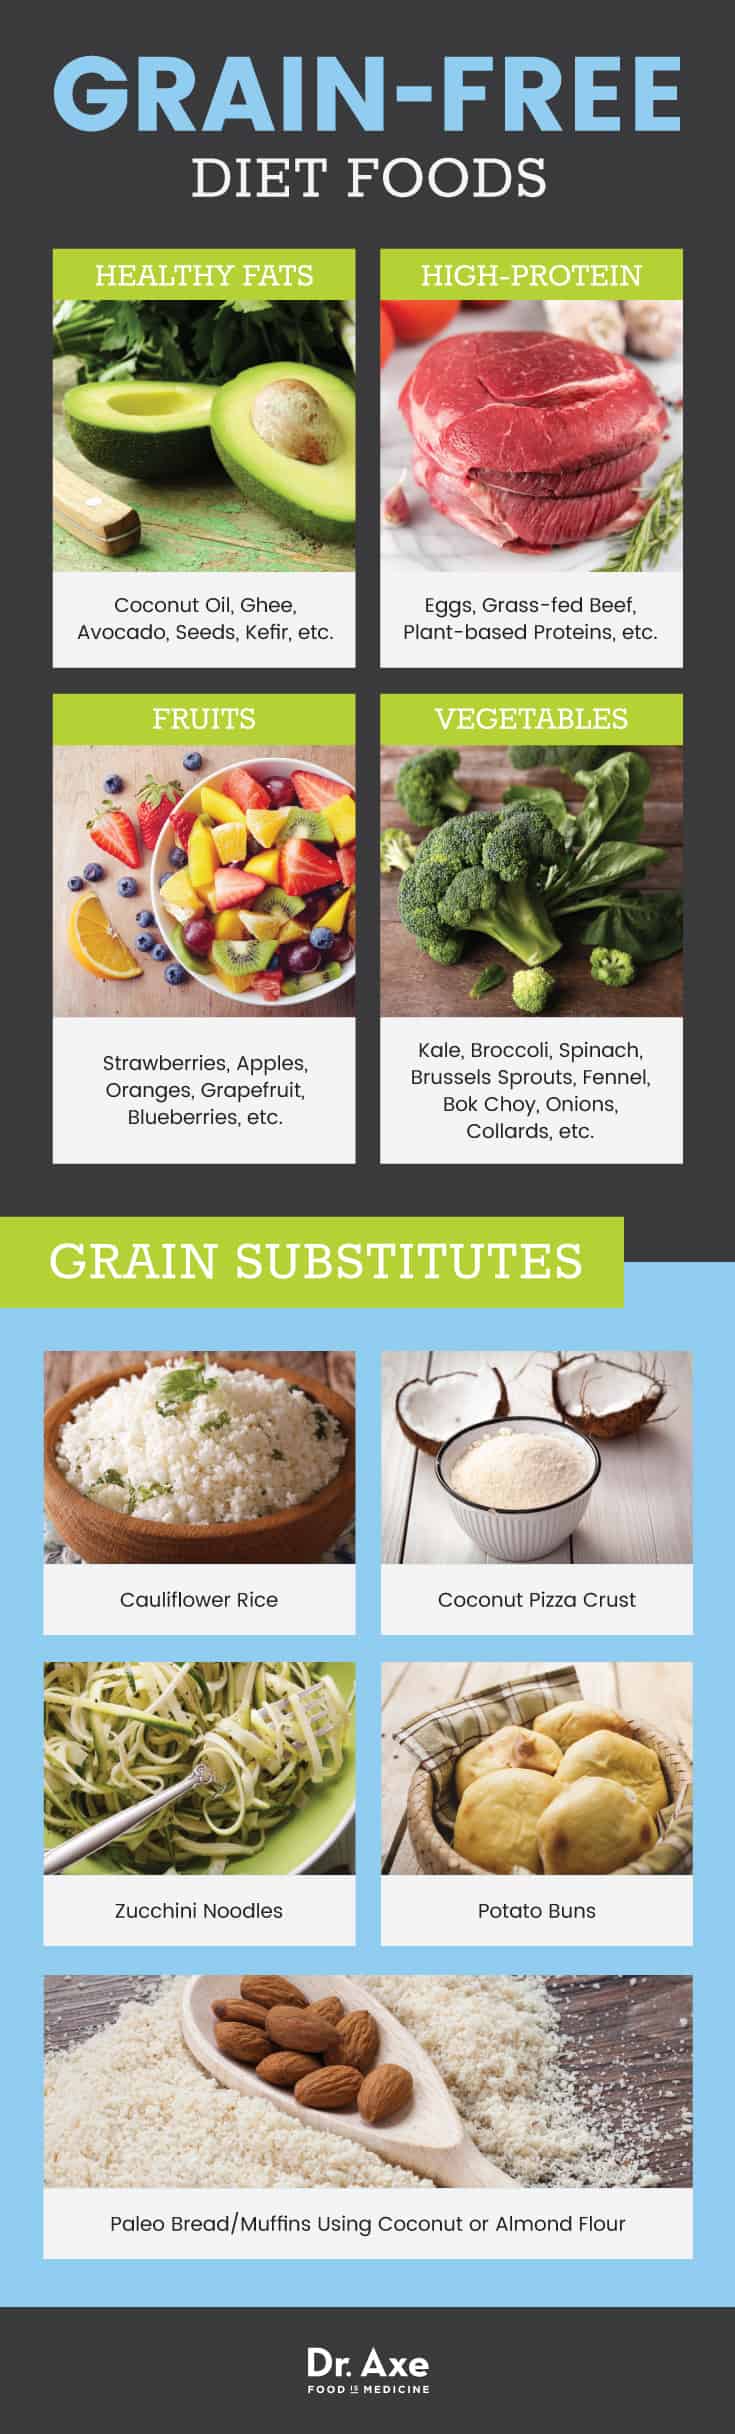 Grain-free diet foods - Dr. Axe